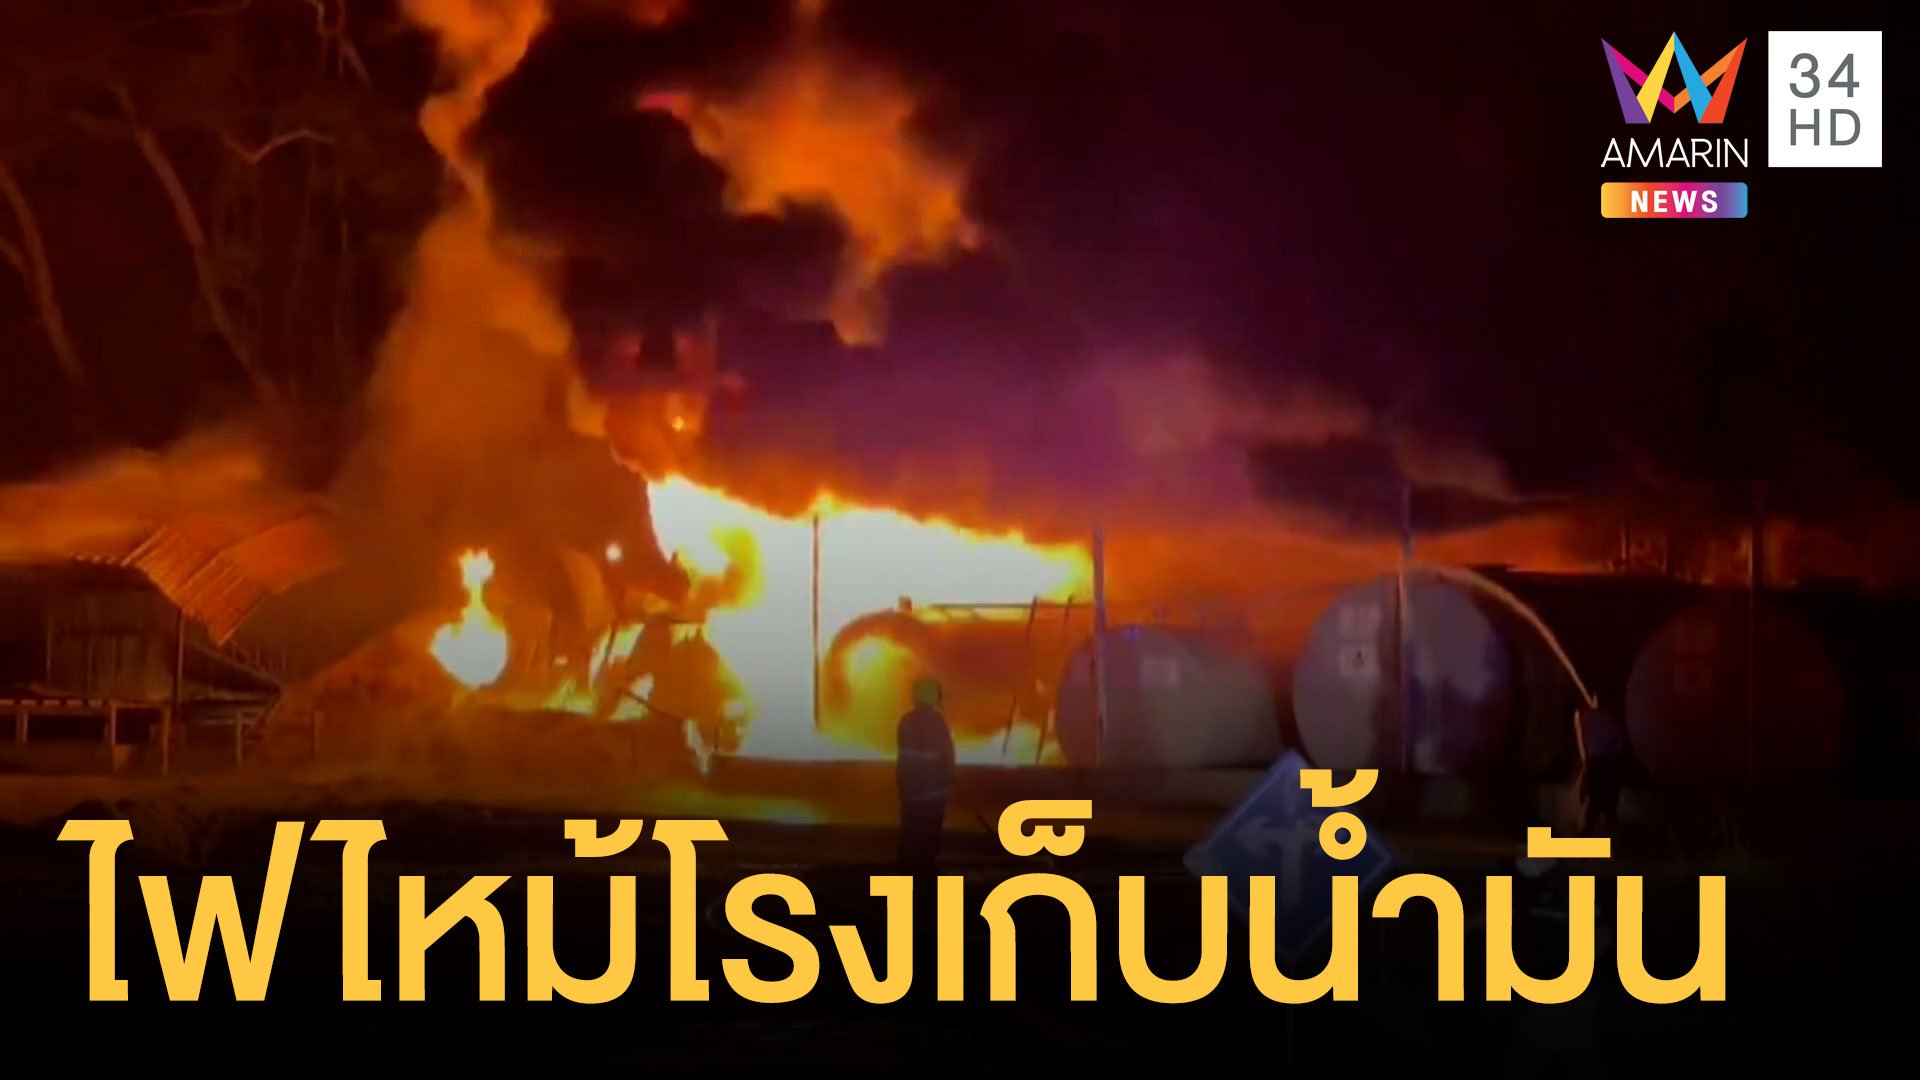 ไฟไหม้โรงเก็บน้ำมันเก่าโคราช ไฟโหมหนักมาก | ข่าวอรุณอมรินทร์ | 17 ก.ค. 64 | AMARIN TVHD34